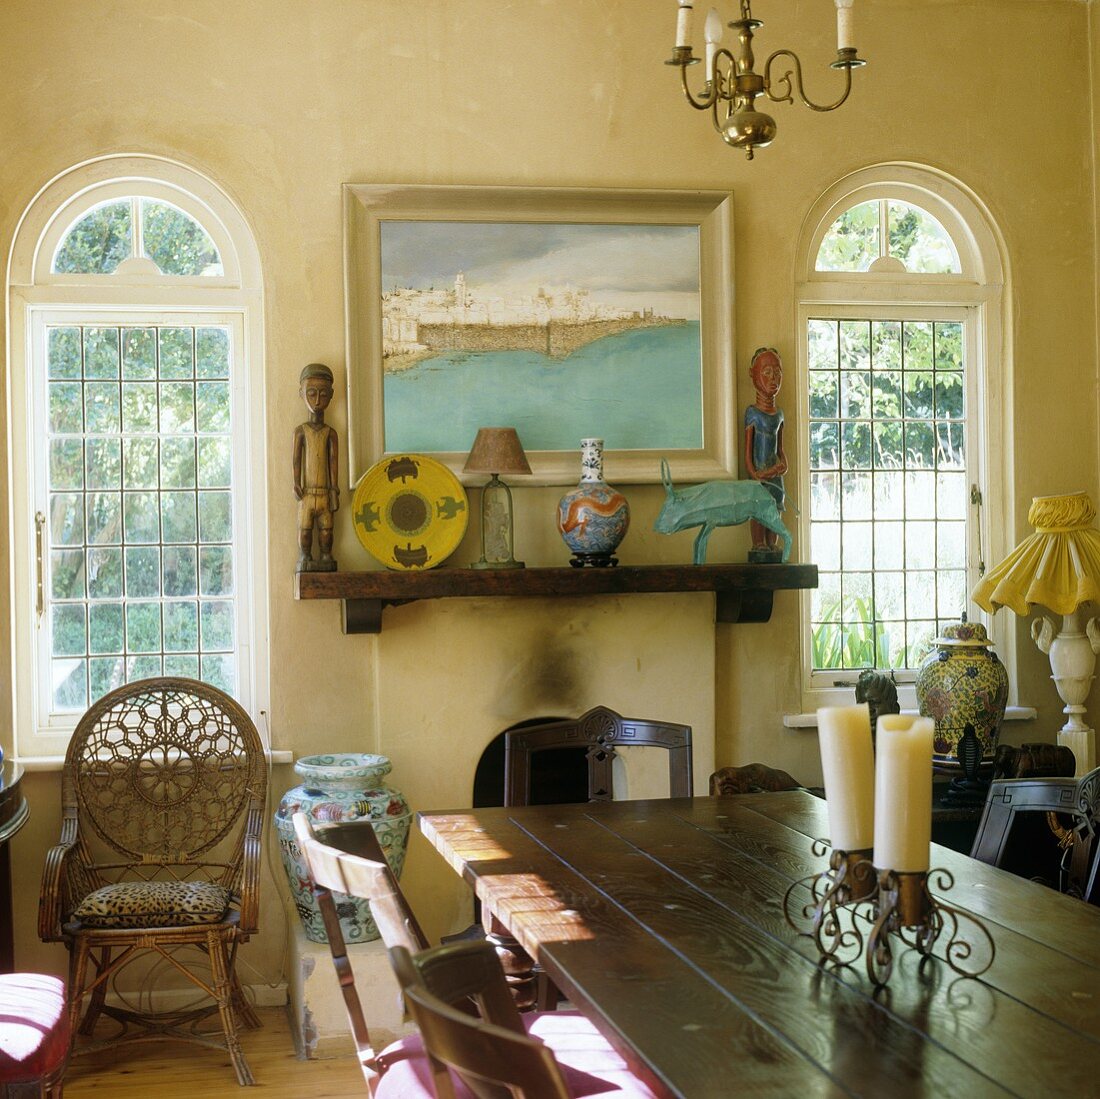 Esstisch vor Kamin mit afrikanischen Kunstobjekten und Fenster mit Rundbogen im ländlichen Wohnraum